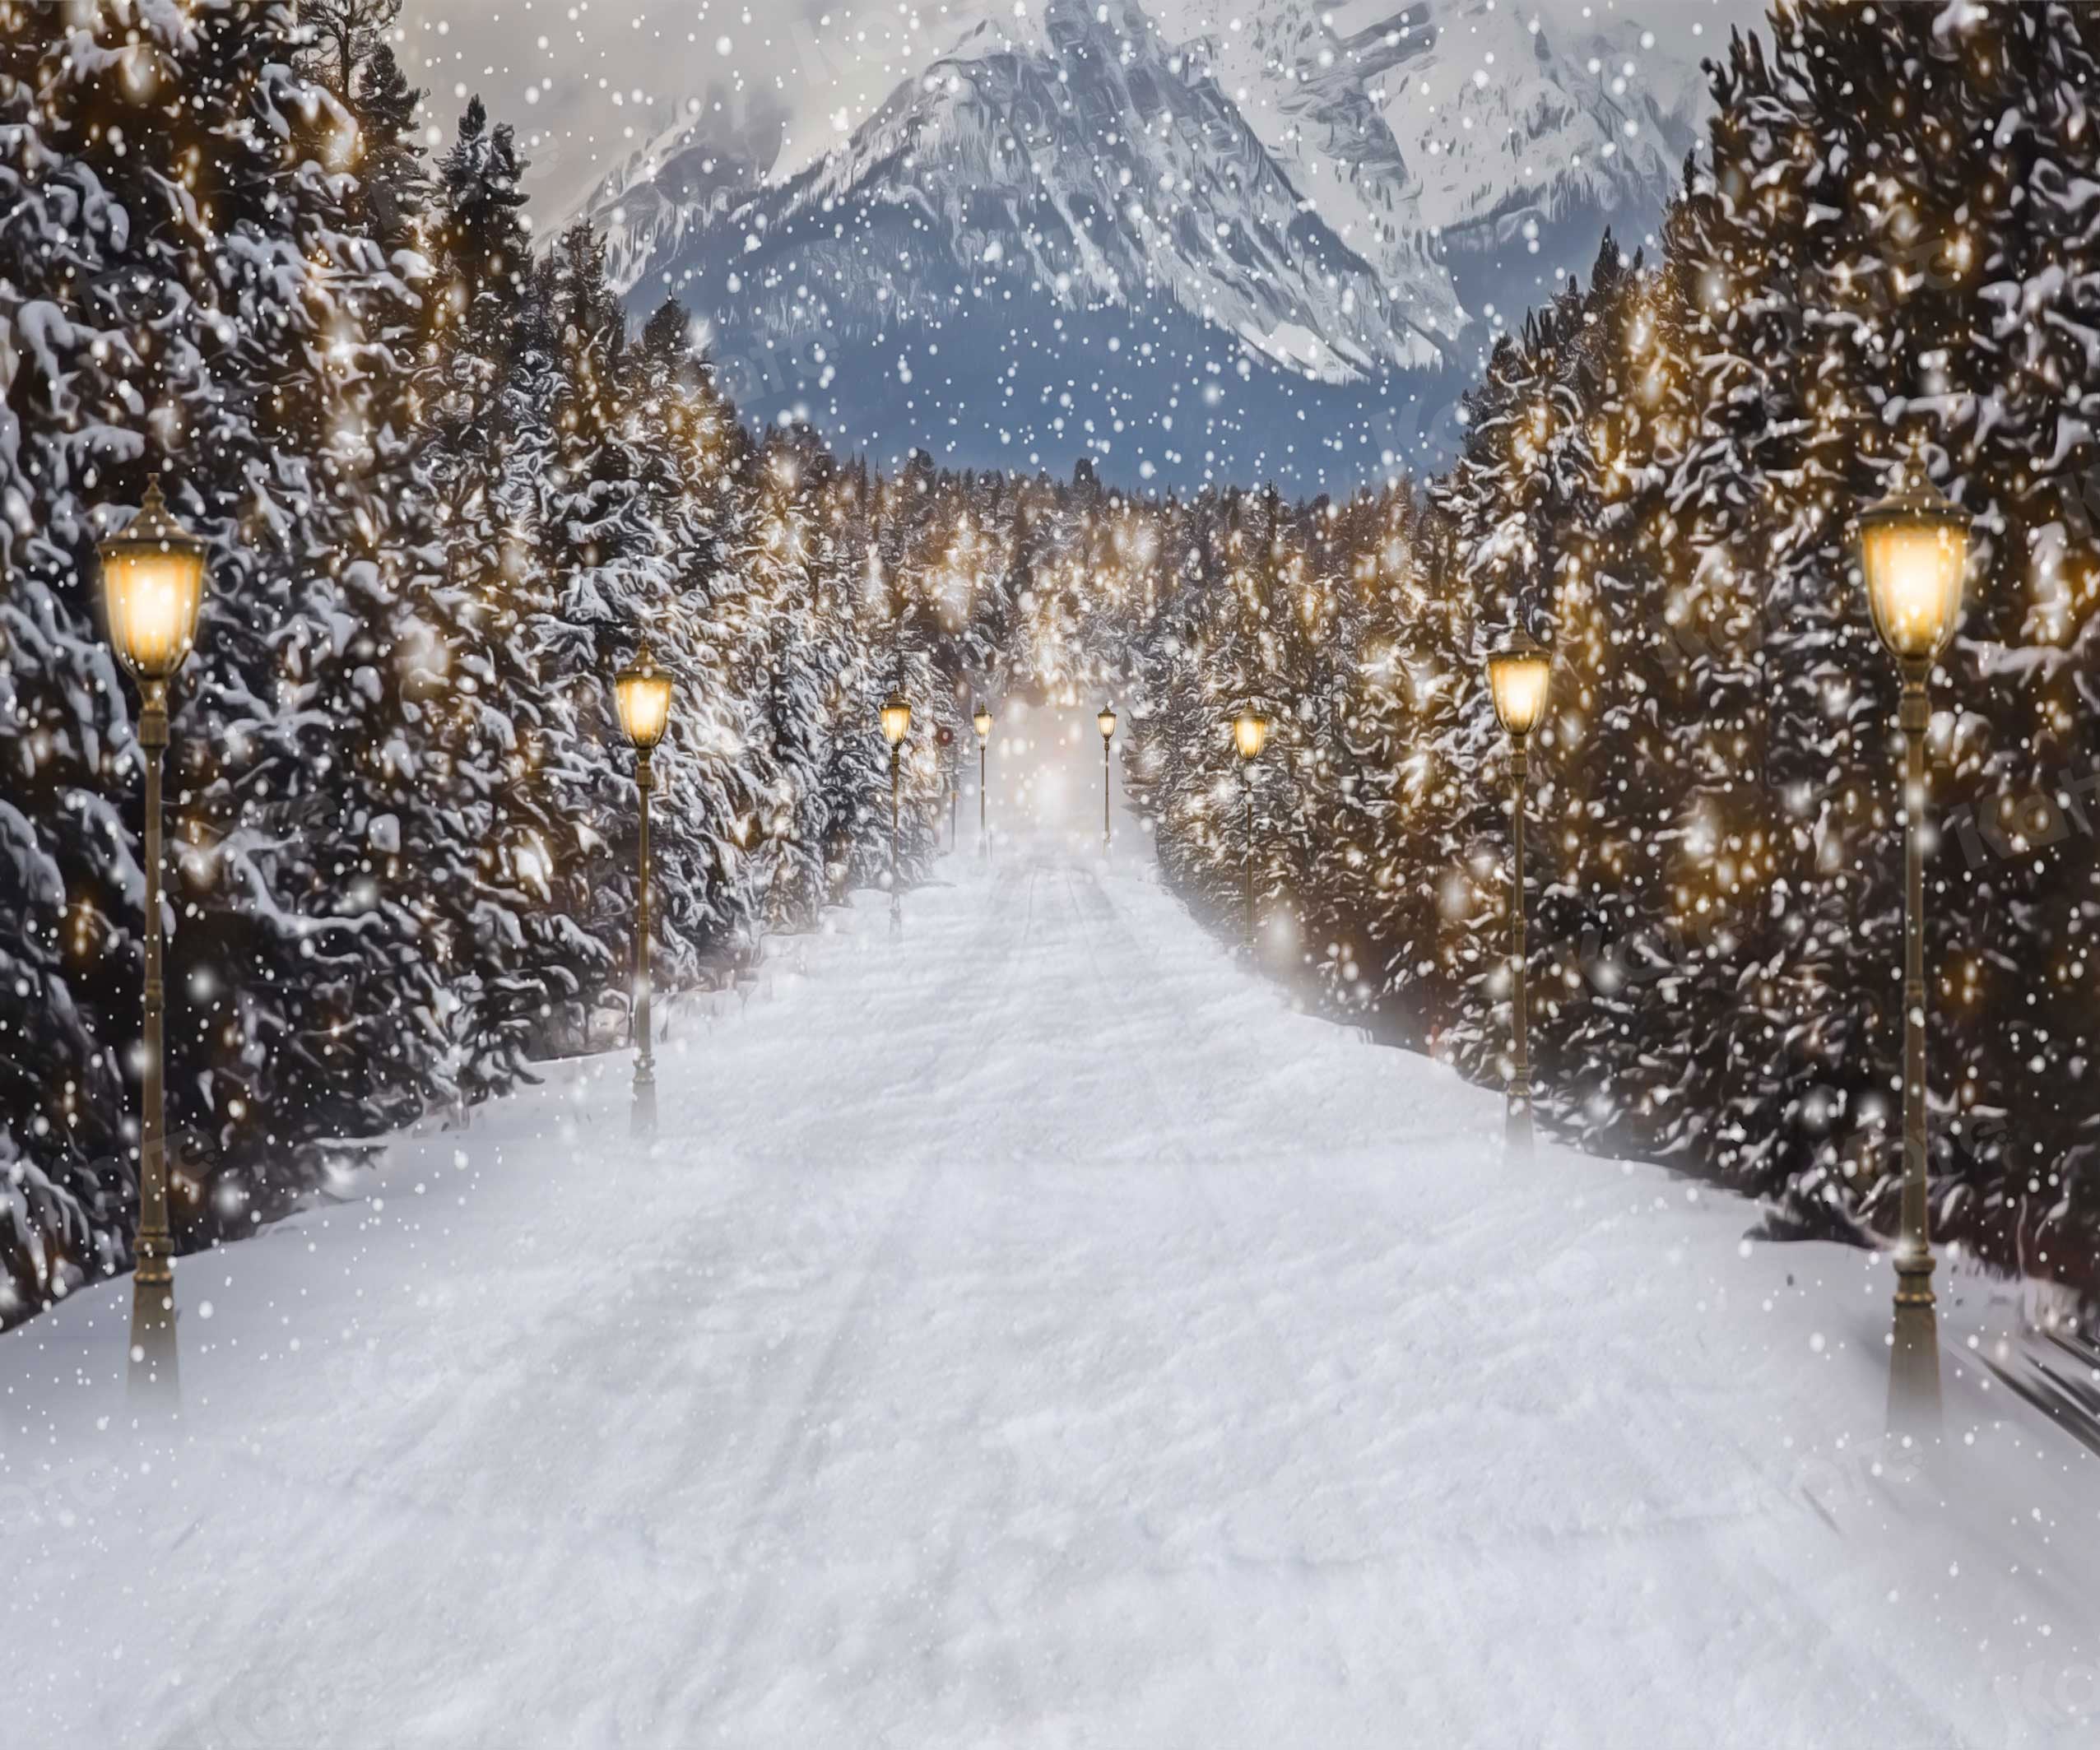 Kate Route de toile de fond de scène de neige d'hiver pour la photographie